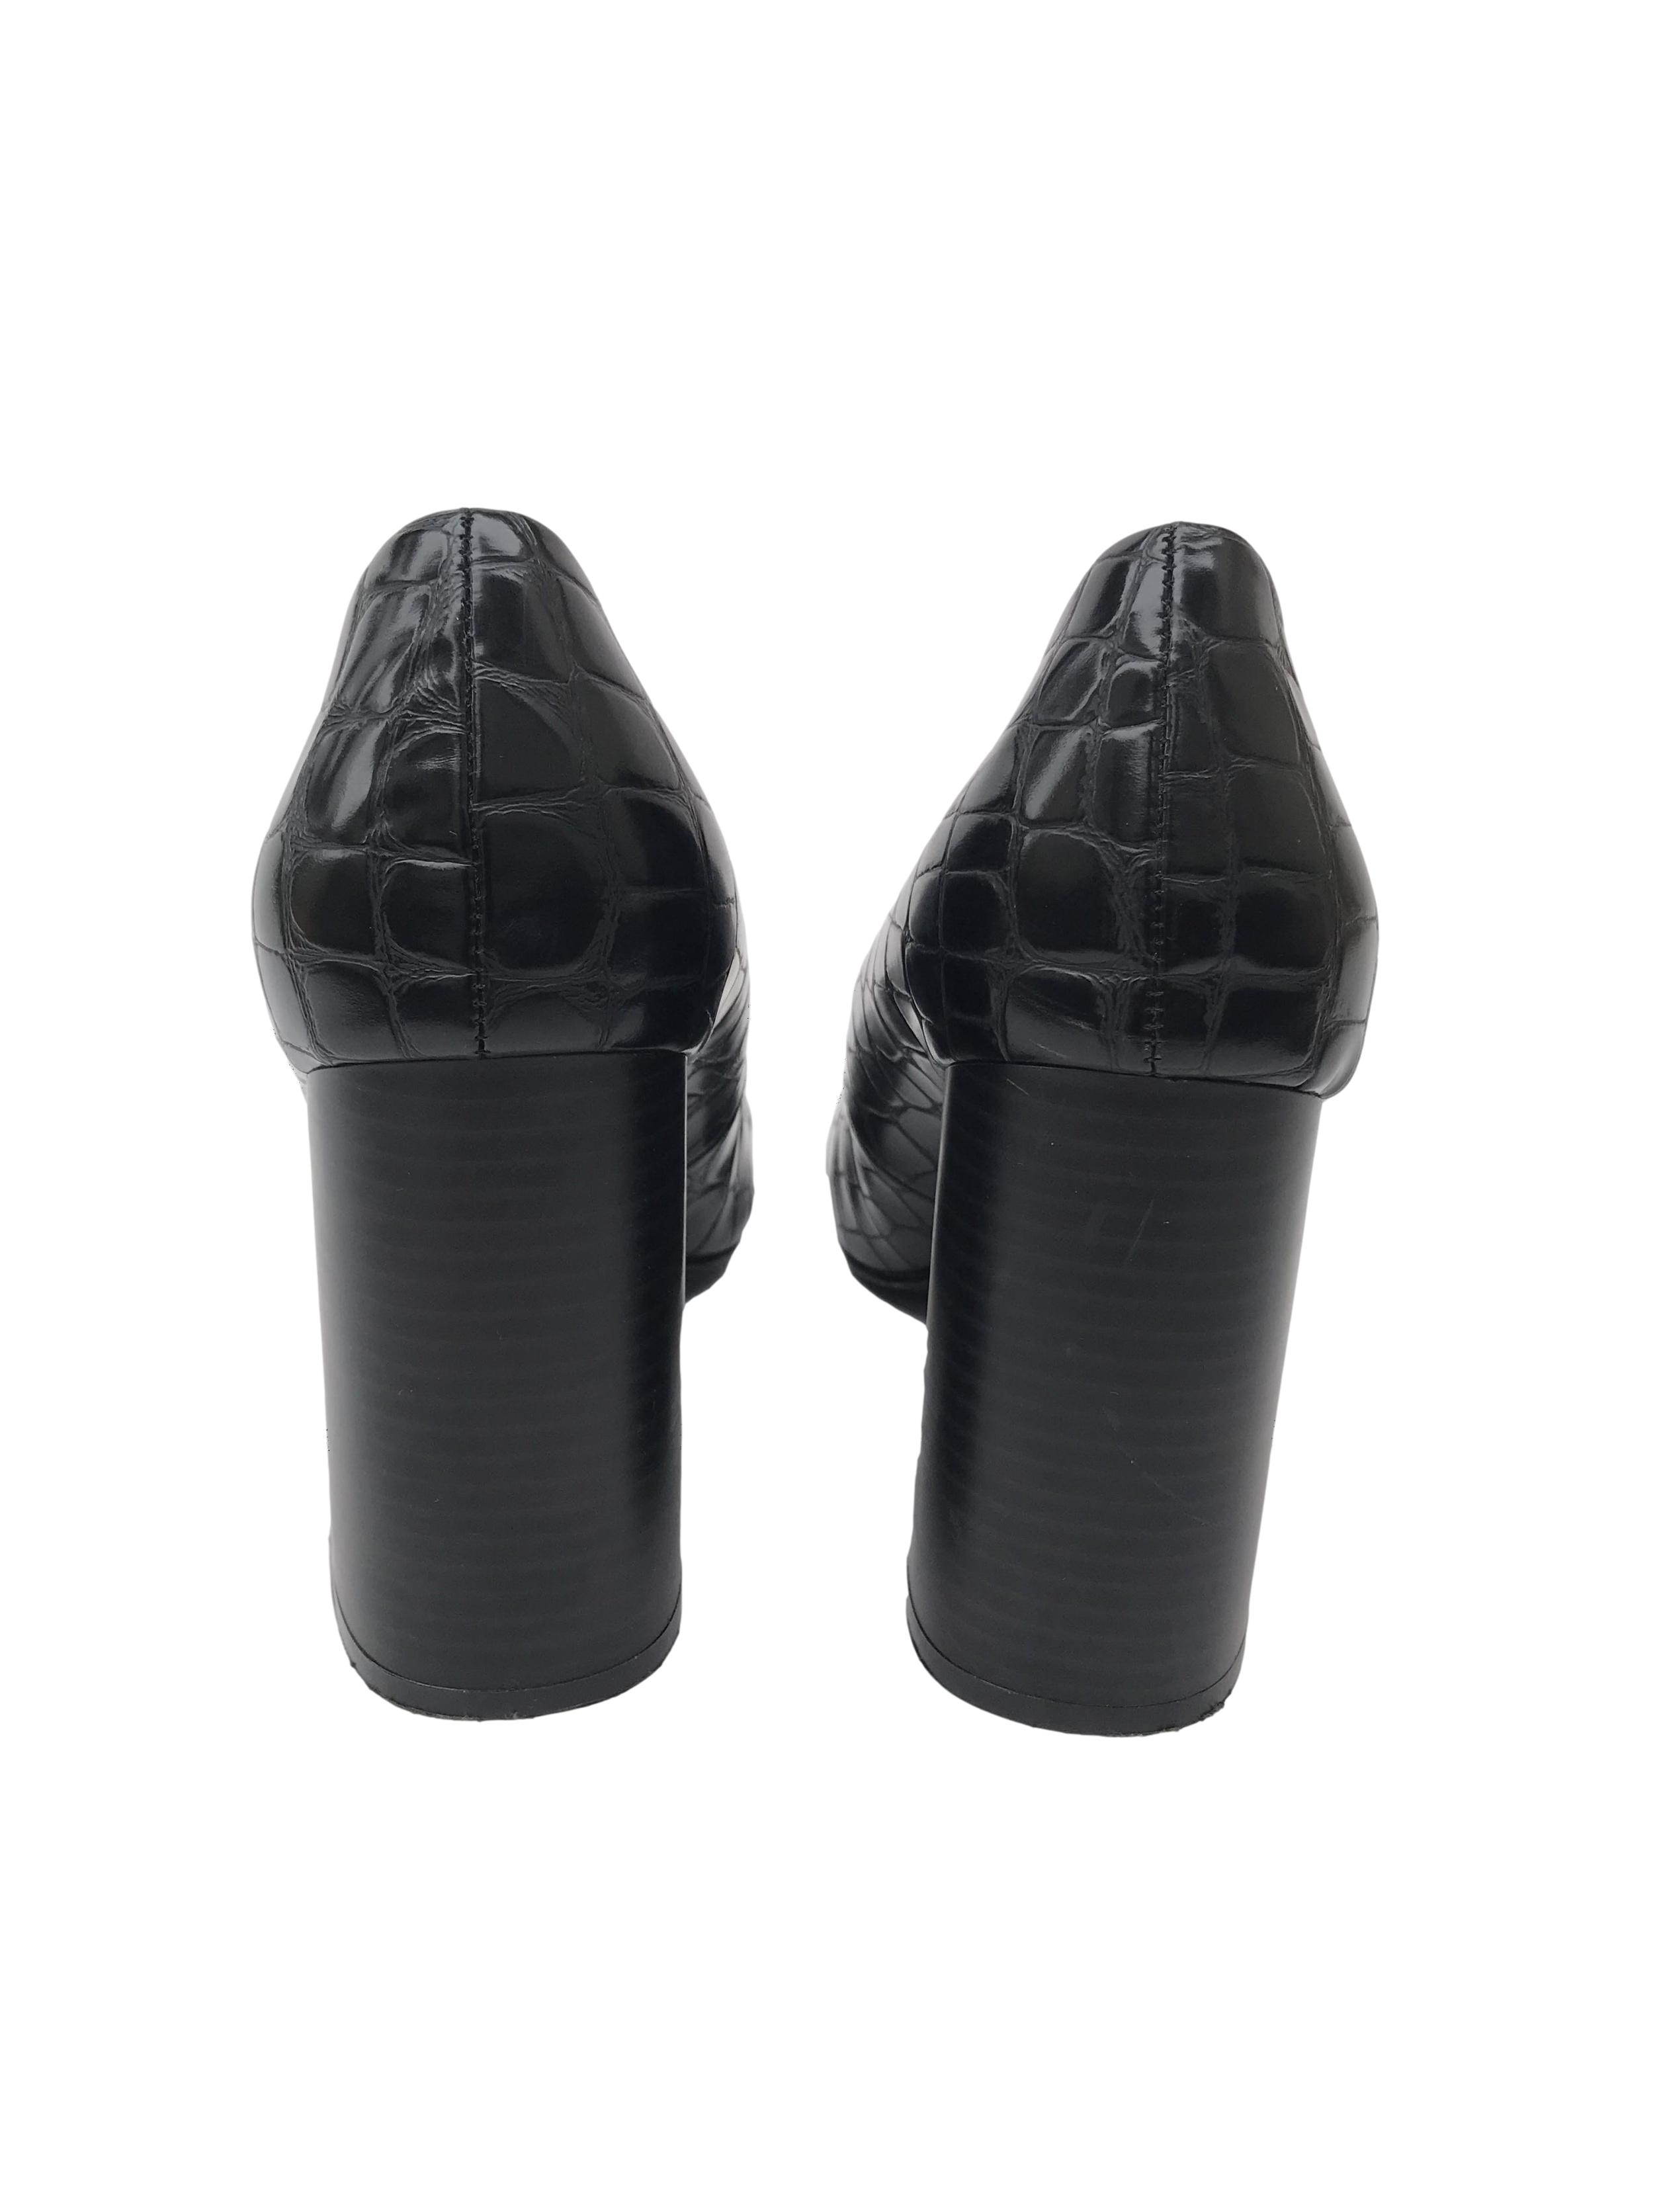 Zapatos H&M negros con textura pitón tipo cuero, punta redonda, taco grueso 9cm. Estado 9/10